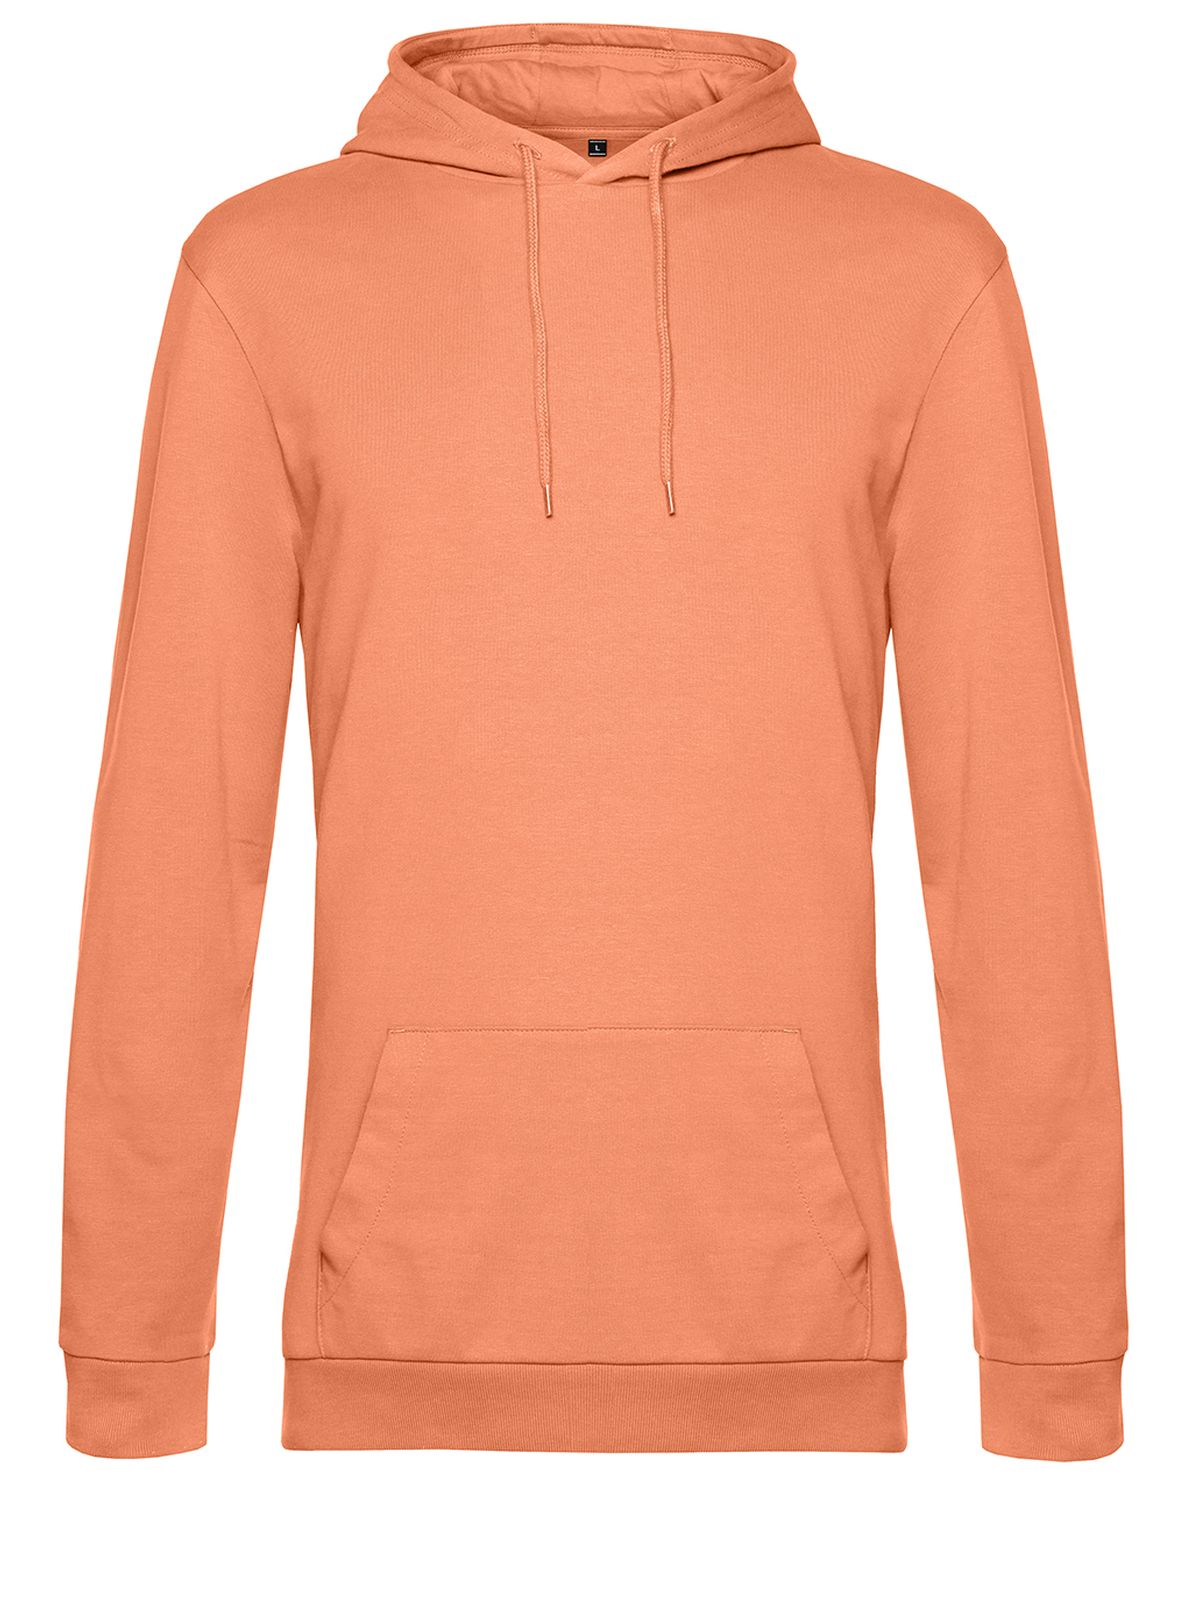 hoodie-melon-orange.webp